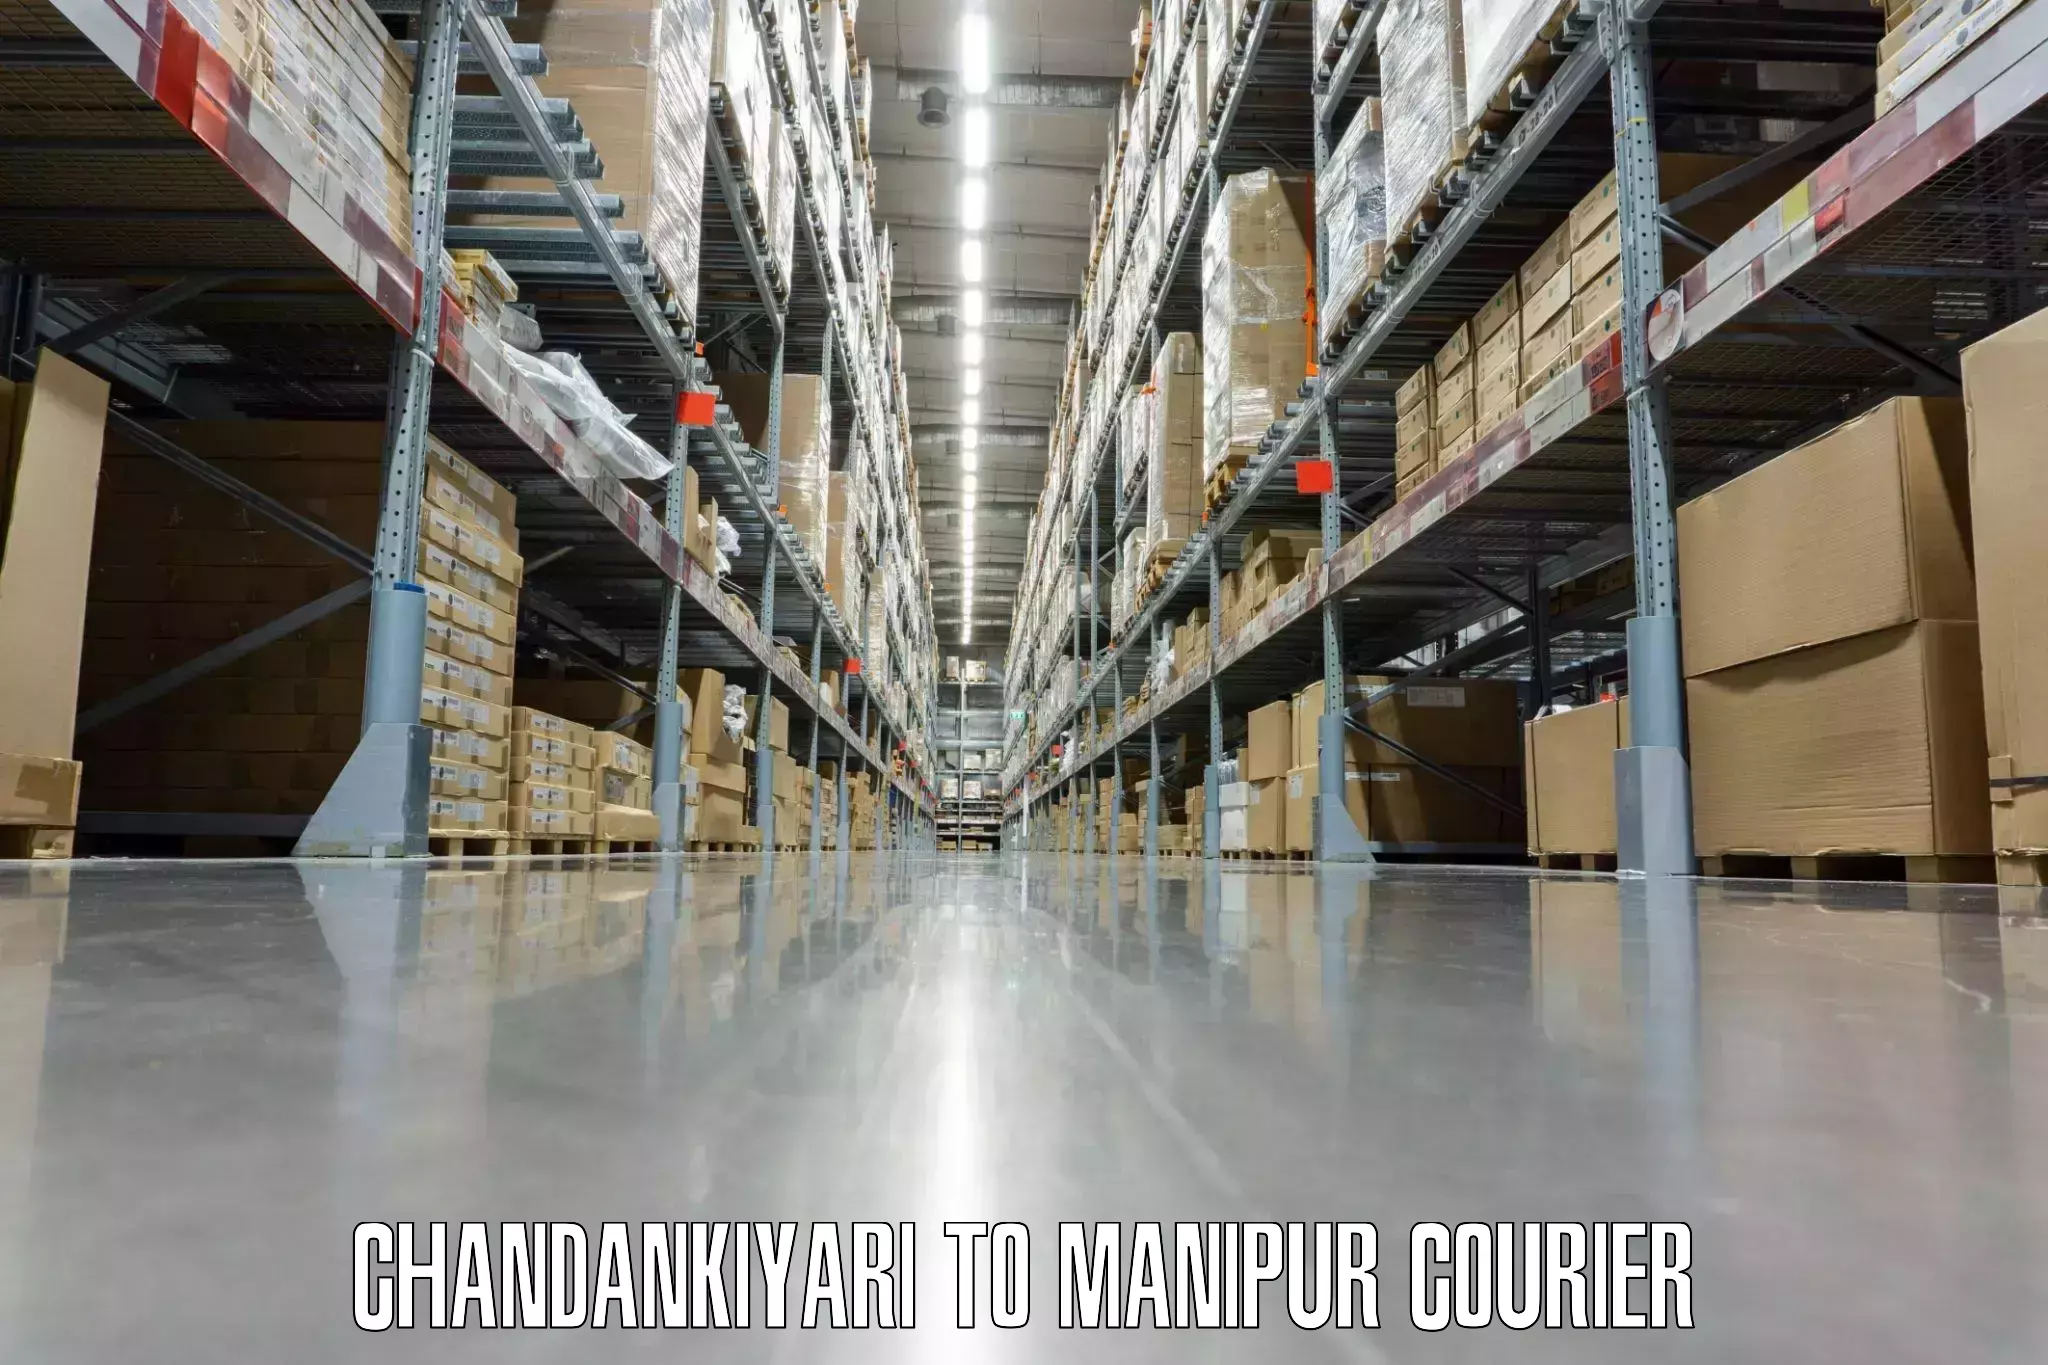 Luggage transfer service Chandankiyari to Imphal